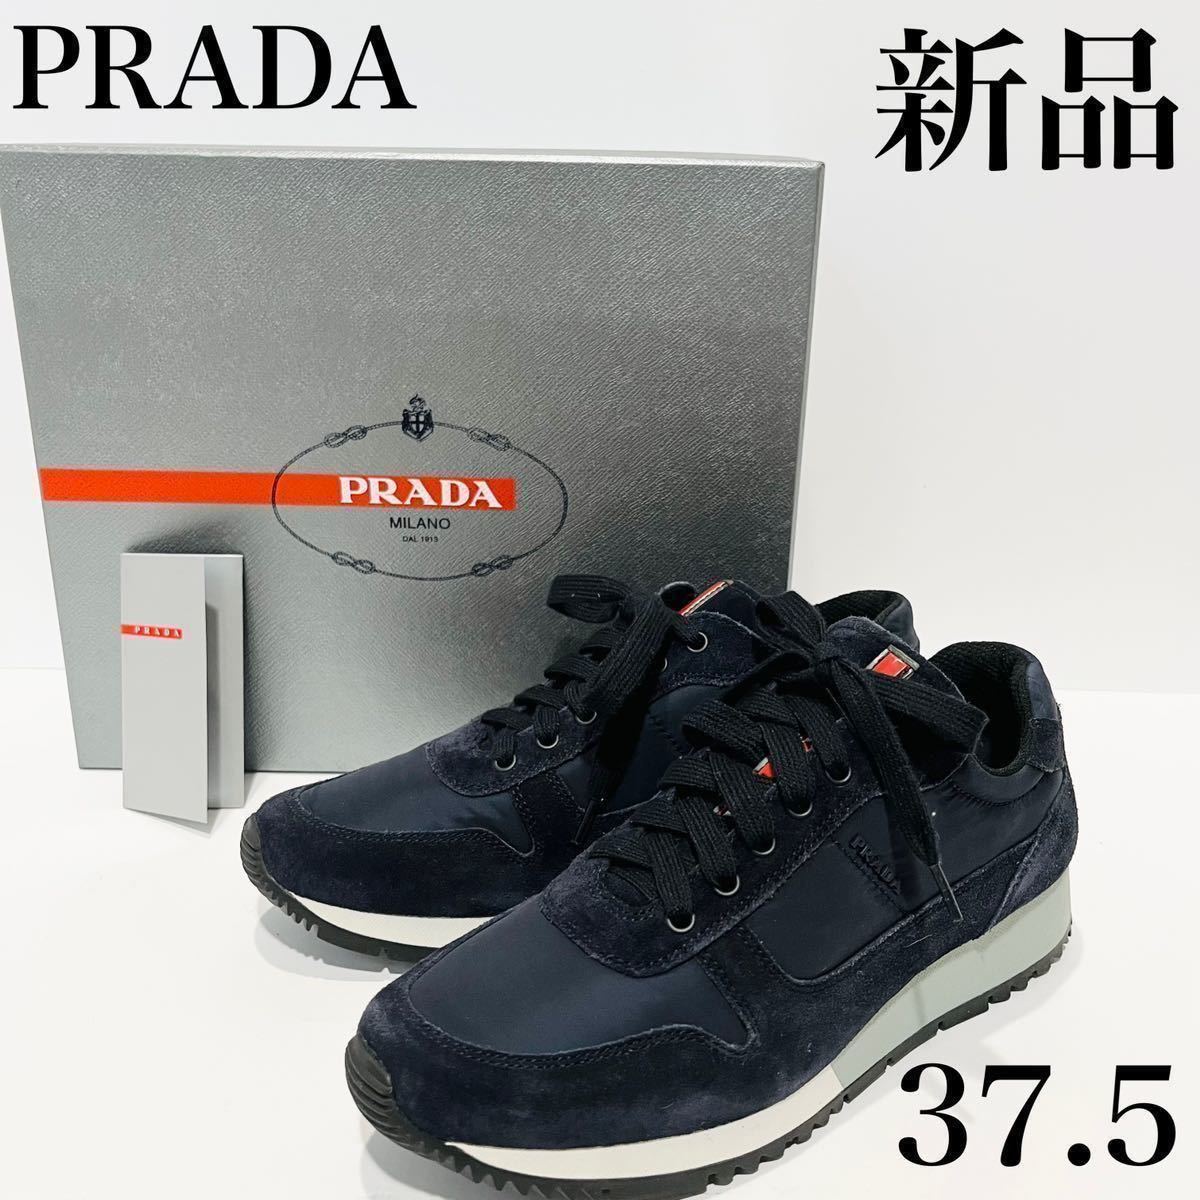 プラダ PRADA プラダスポーツ PRADA SRORT スニーカー スエード ネイビー 紺色 レディース 箱あり 新品 37.5 24cm相当